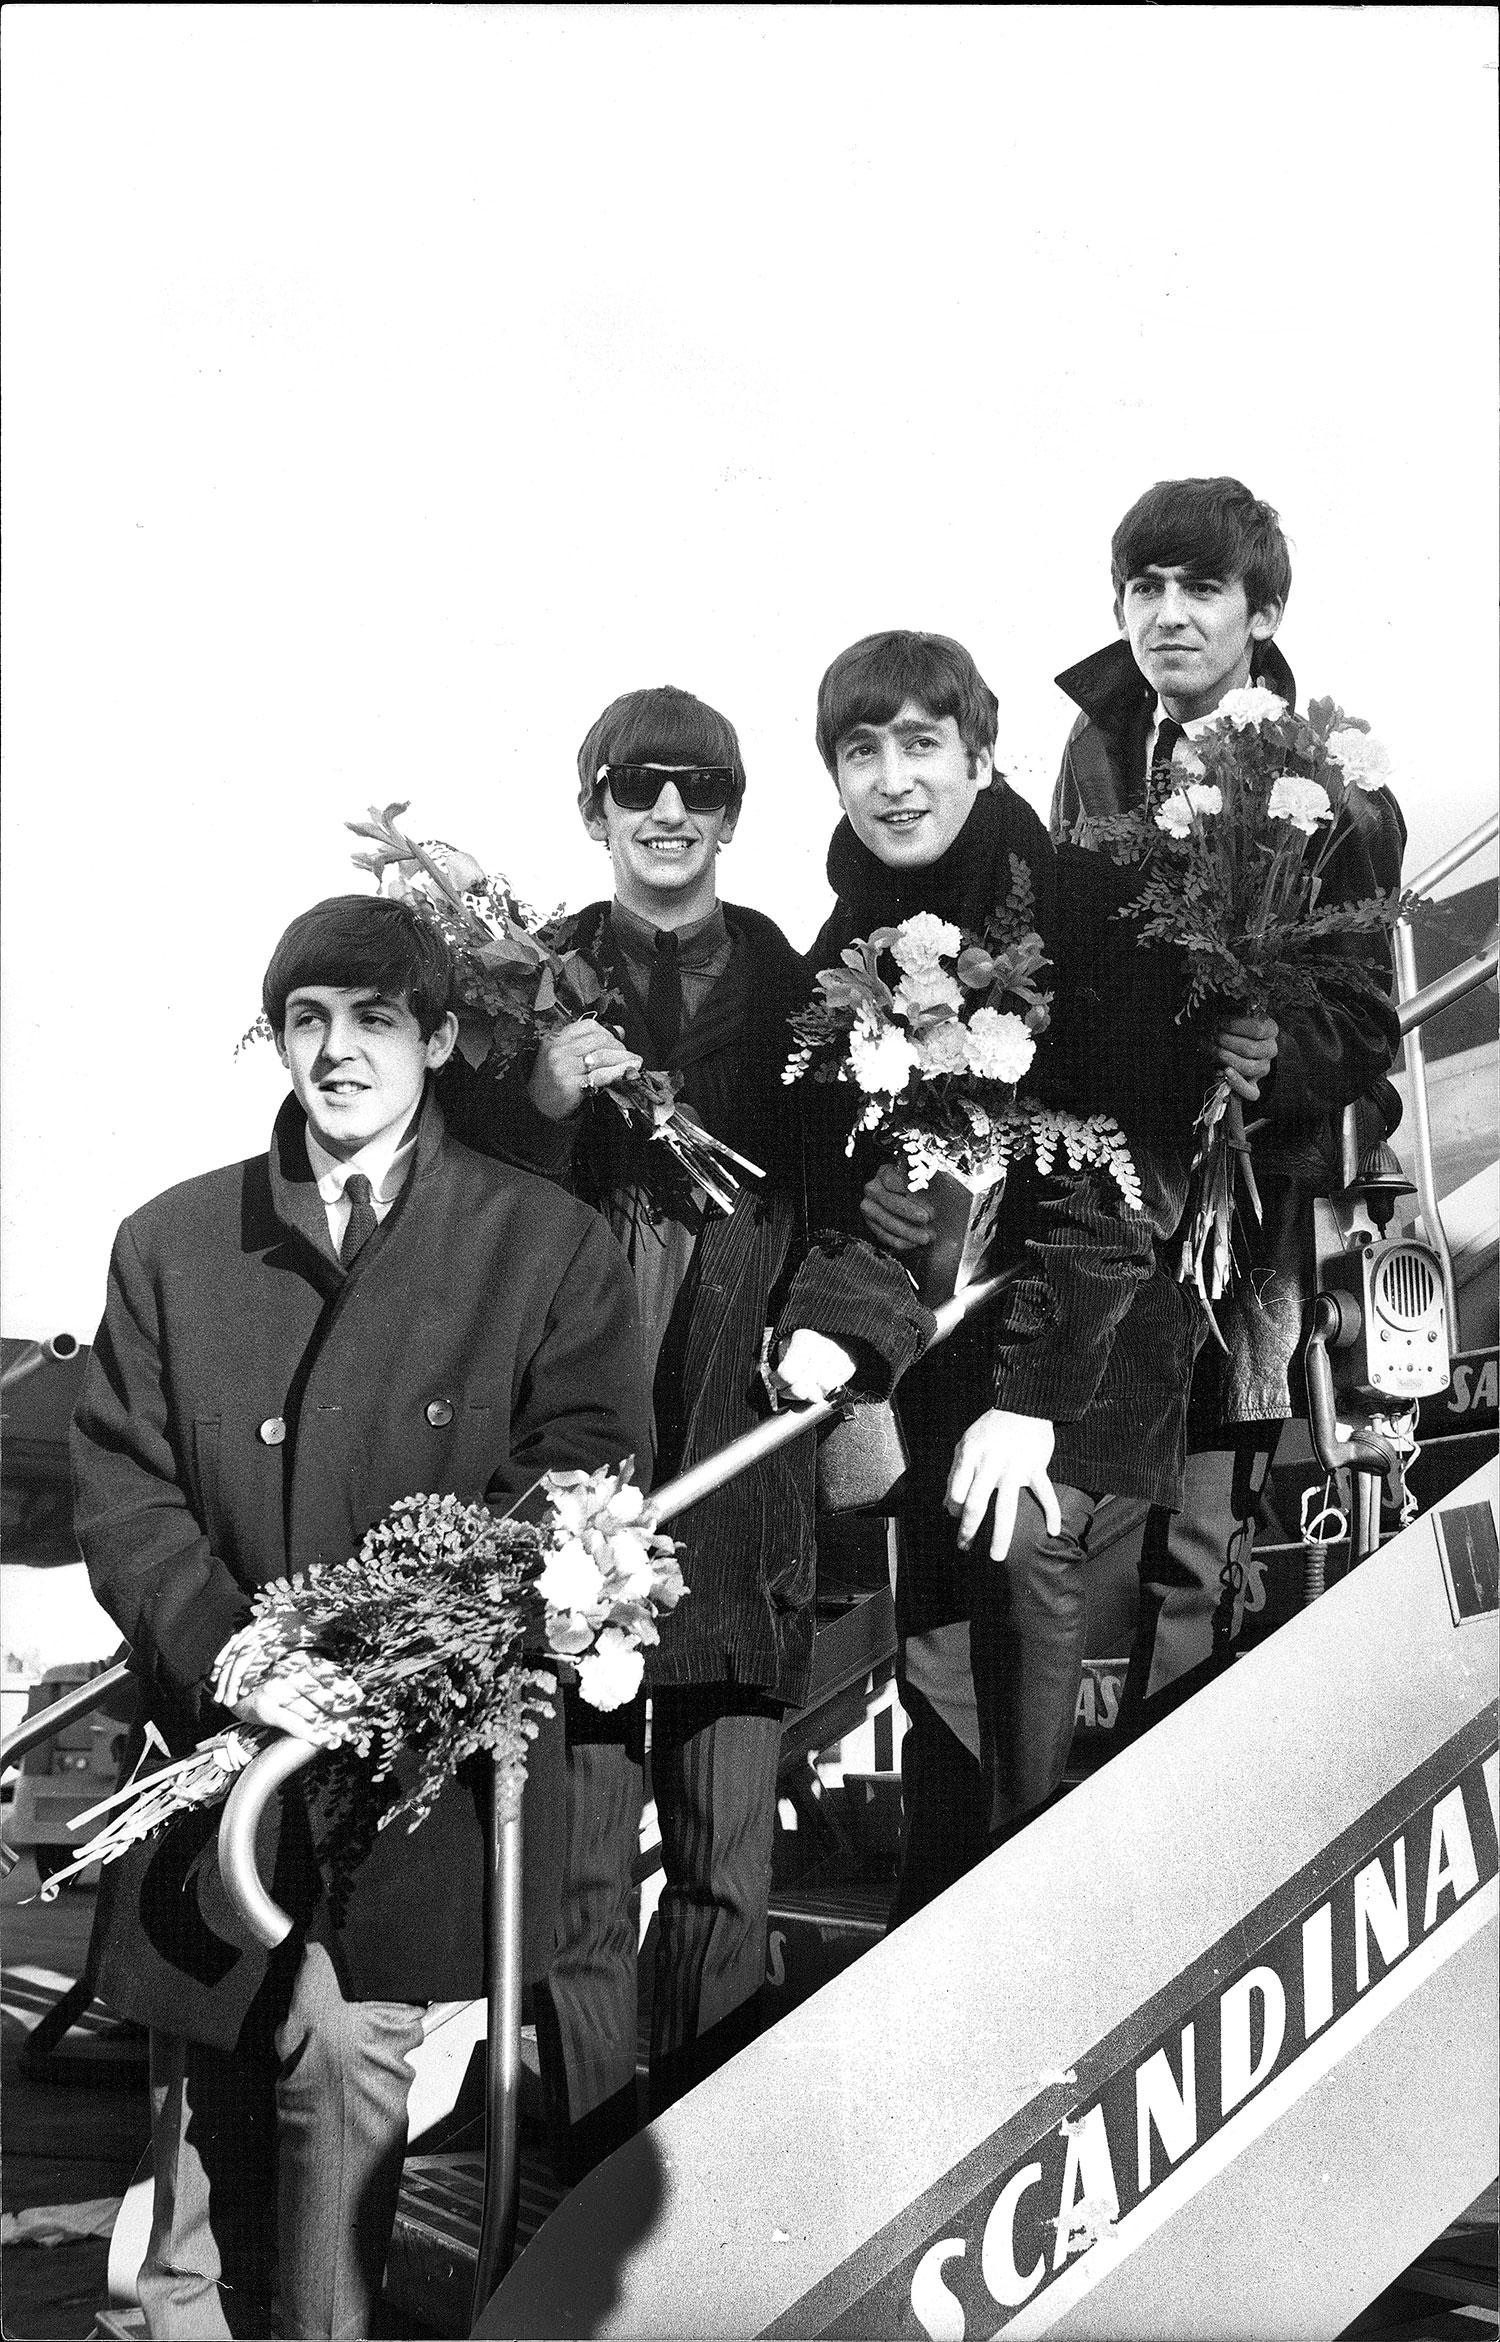 ÅTERVÄNDE TILL SVERIGE 1964 var Beatles tillbaka i Sverige. Här på väg av från flygplanet: Paul McCartney, Ringo Starr, John Lennon och George Harrison.